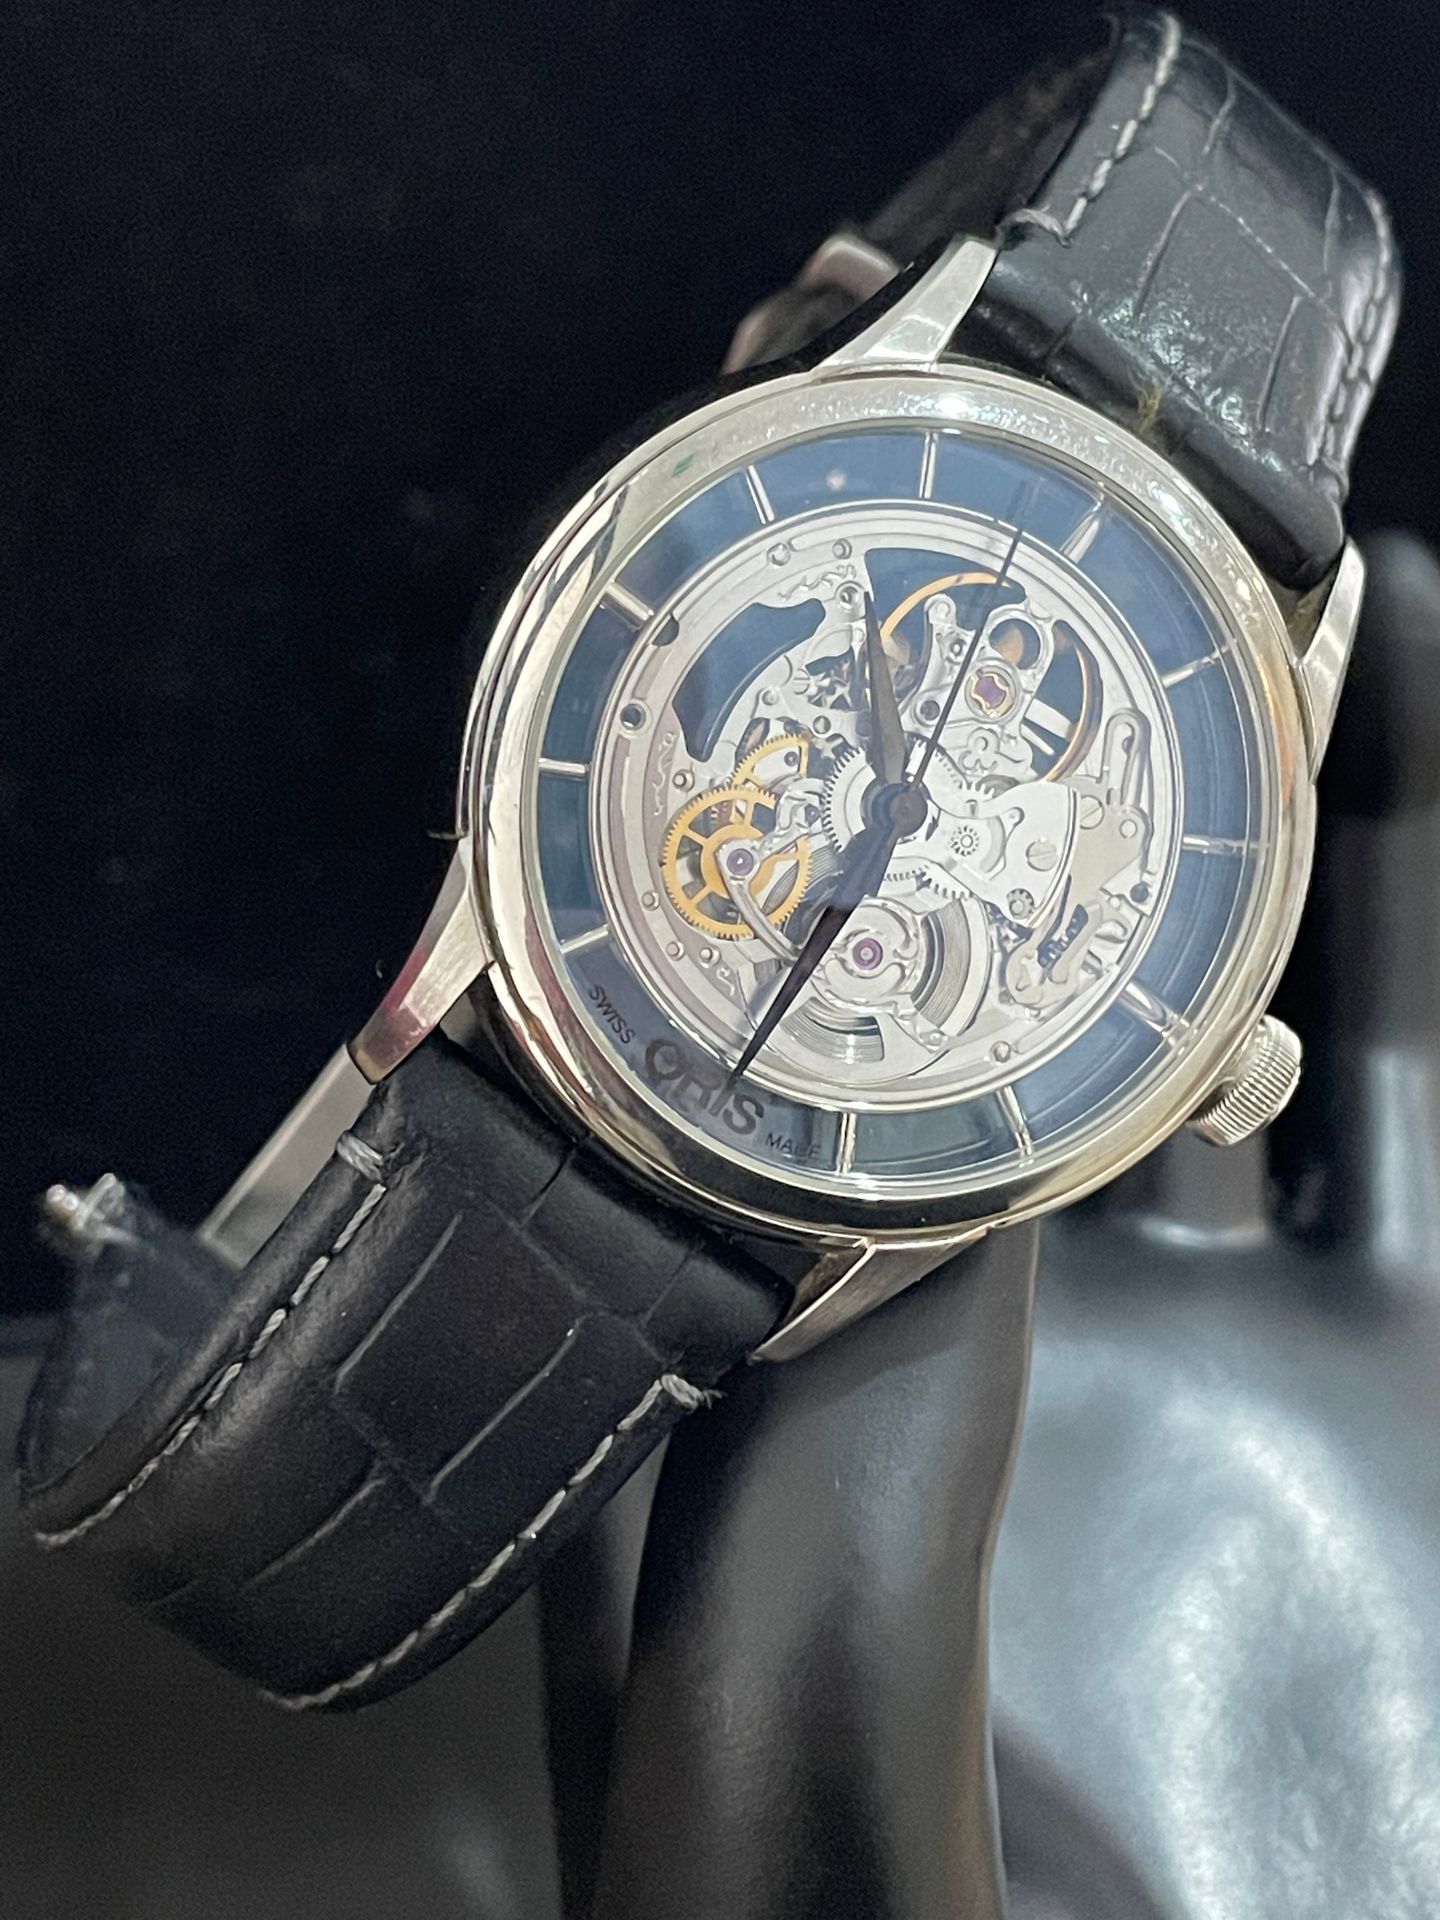 Null ORIS.
水晶蓝宝石男士手表，自动机芯。精钢表壳，原装黑色皮表带。
N°7684. 33. 04143.
原装表壳和包装盒。